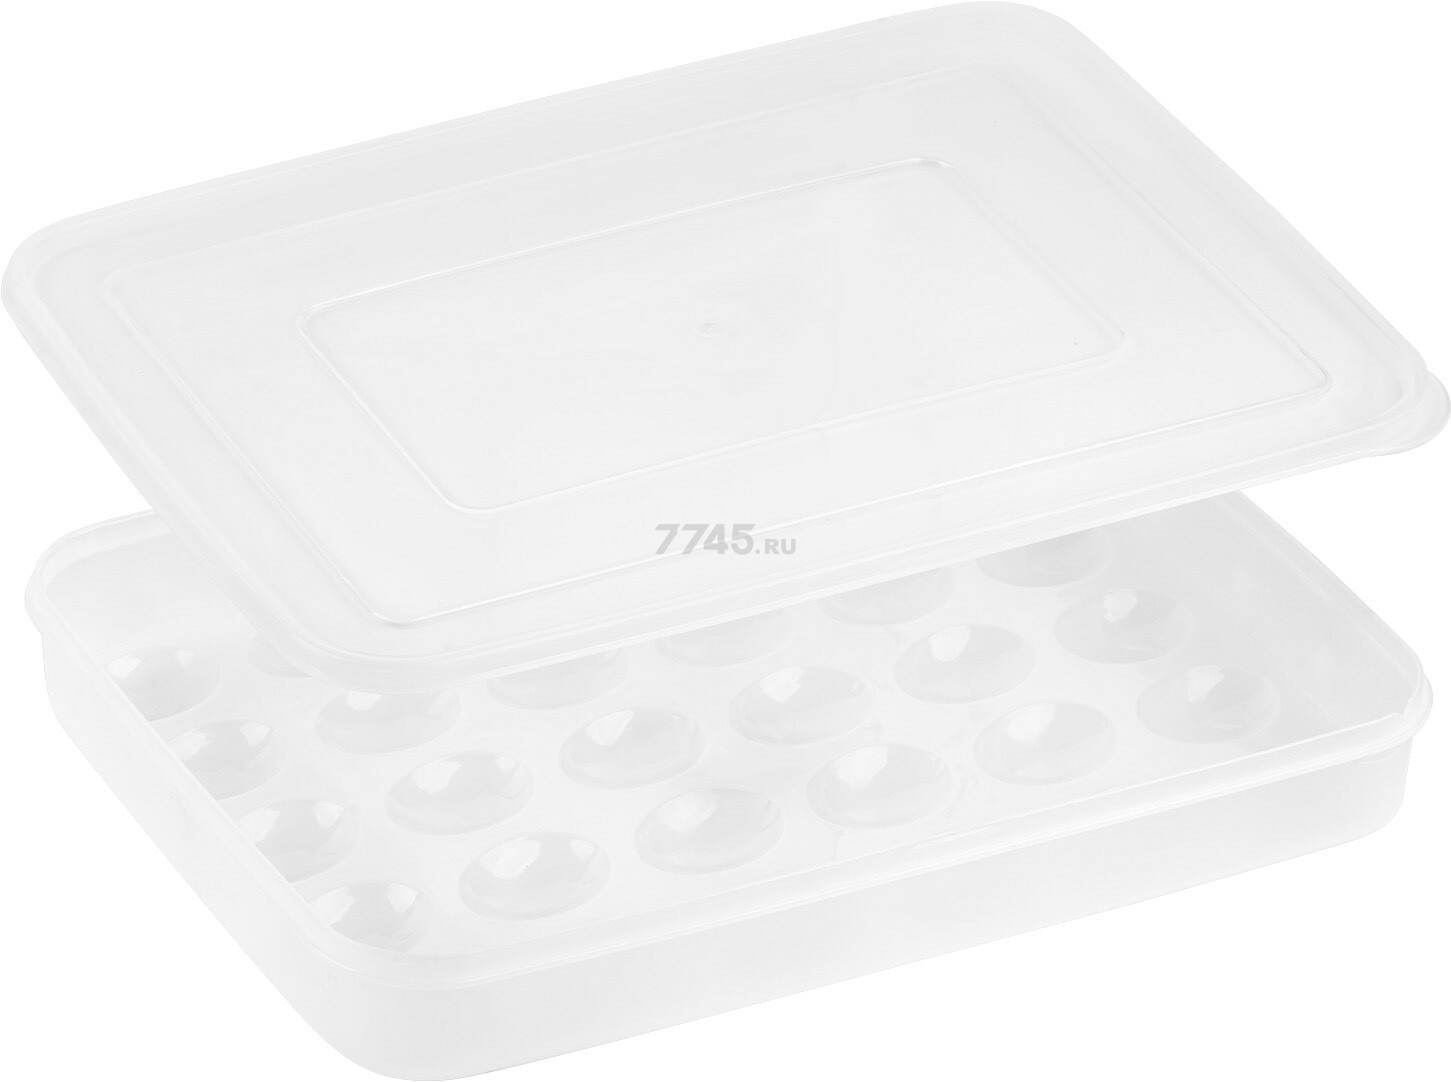 Контейнер пластиковый для хранения яиц PERFECTO LINEA 30 ячеек прозрачный (34-342651)